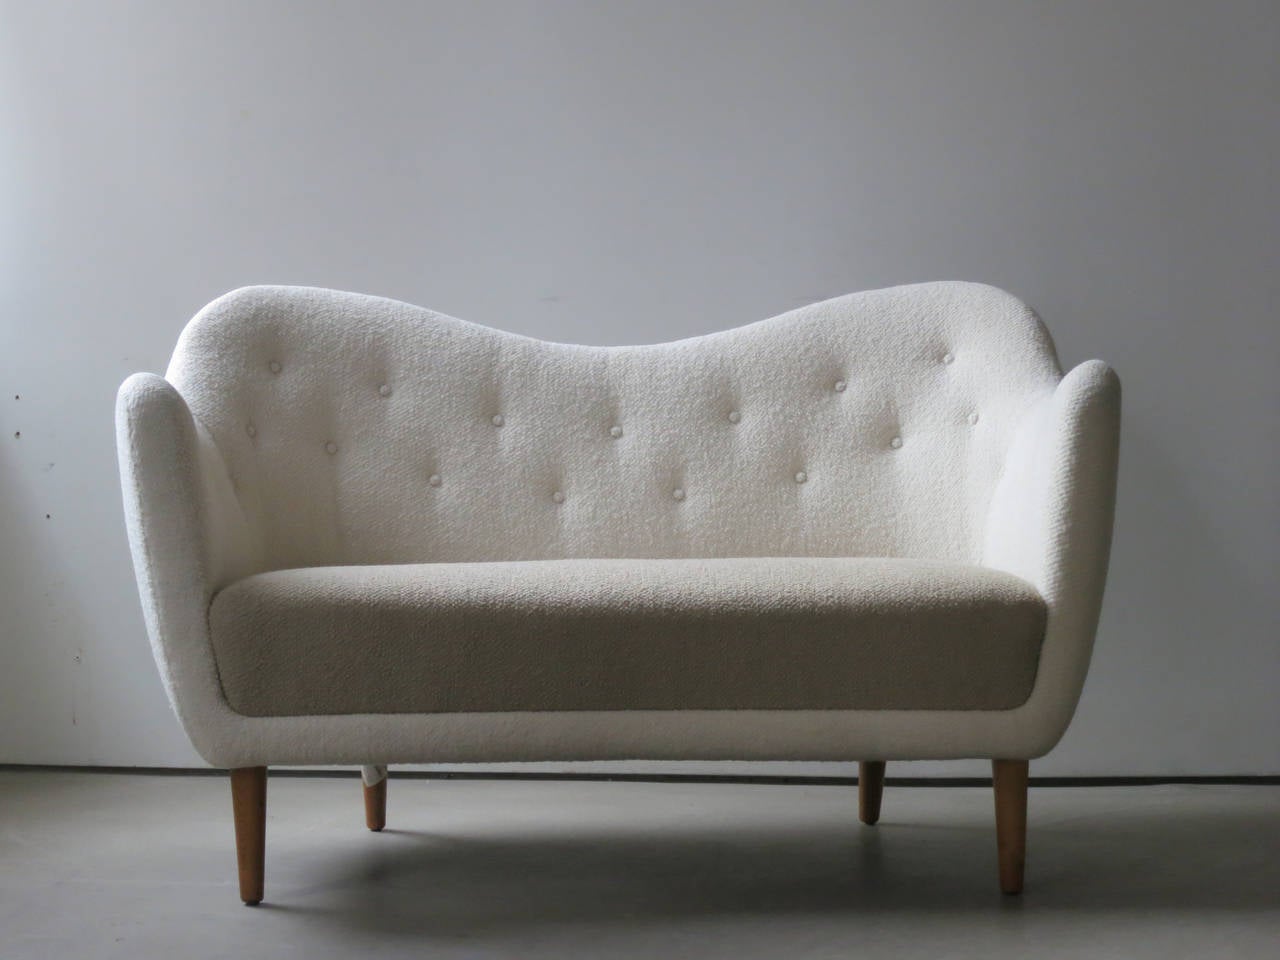 Elegantes geschwungenes Sofa mit Teakholzbeinen von Finn Juhl aus dem Jahr 1948. Dieses ikonische Sofa, das 